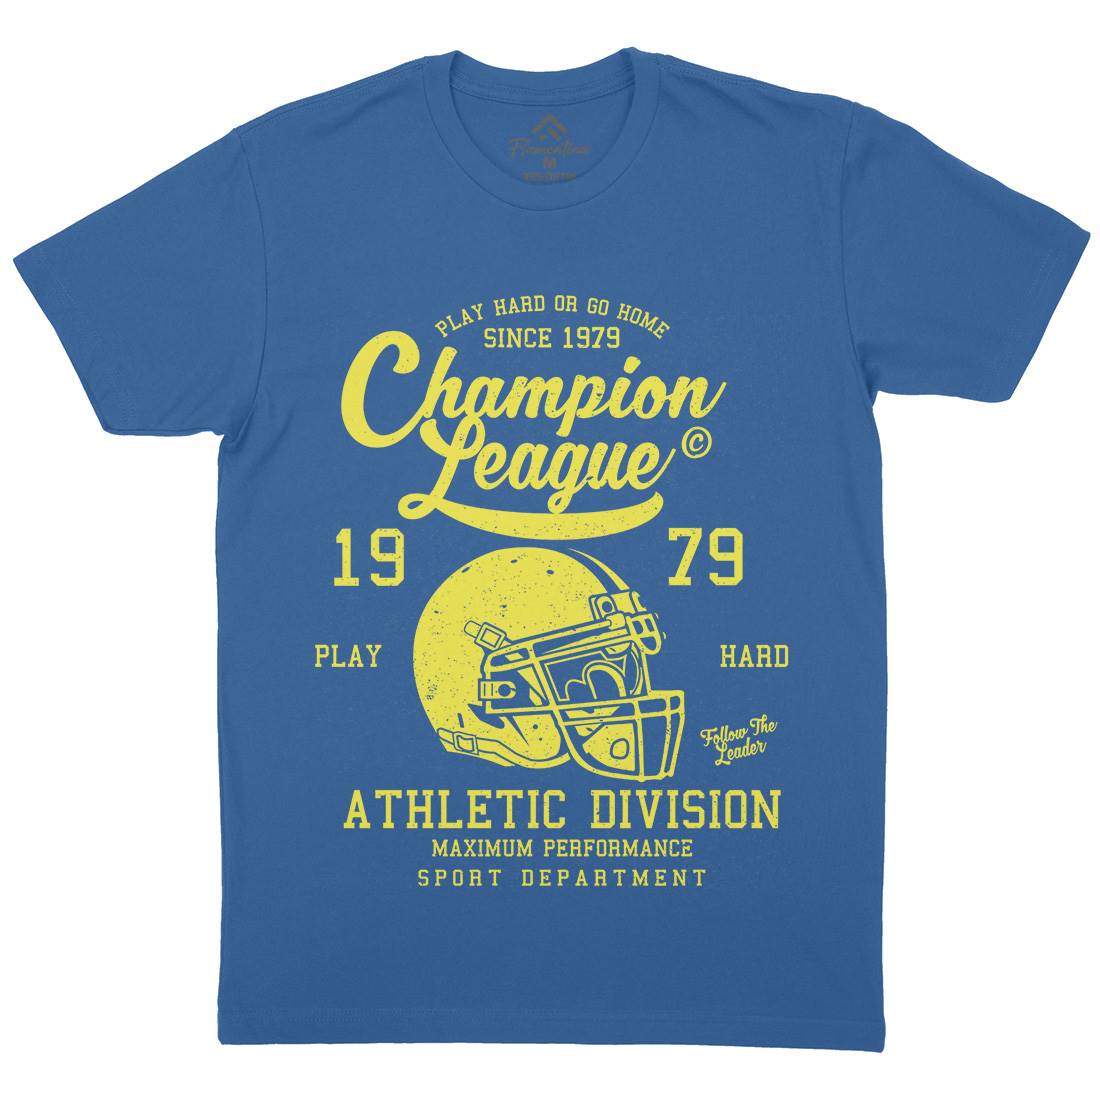 Champion League Mens Crew Neck T-Shirt Sport A031